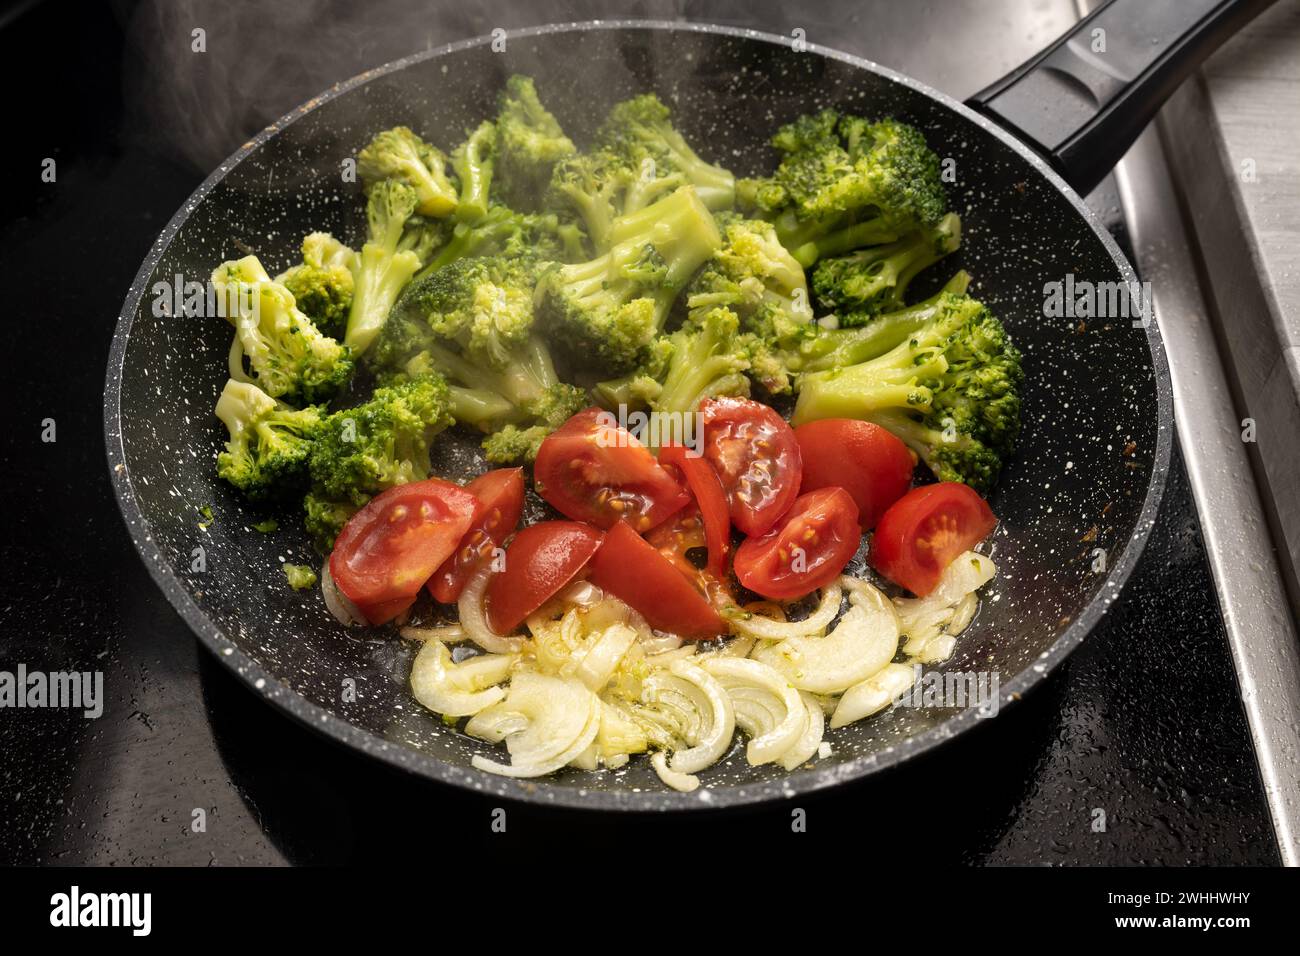 Zwiebeln, Tomaten und Brokkoli werden in einer Dampfpfanne auf dem schwarzen Kochfeld für eine gesunde vegetarische Mahlzeit, ausgewählt Stockfoto